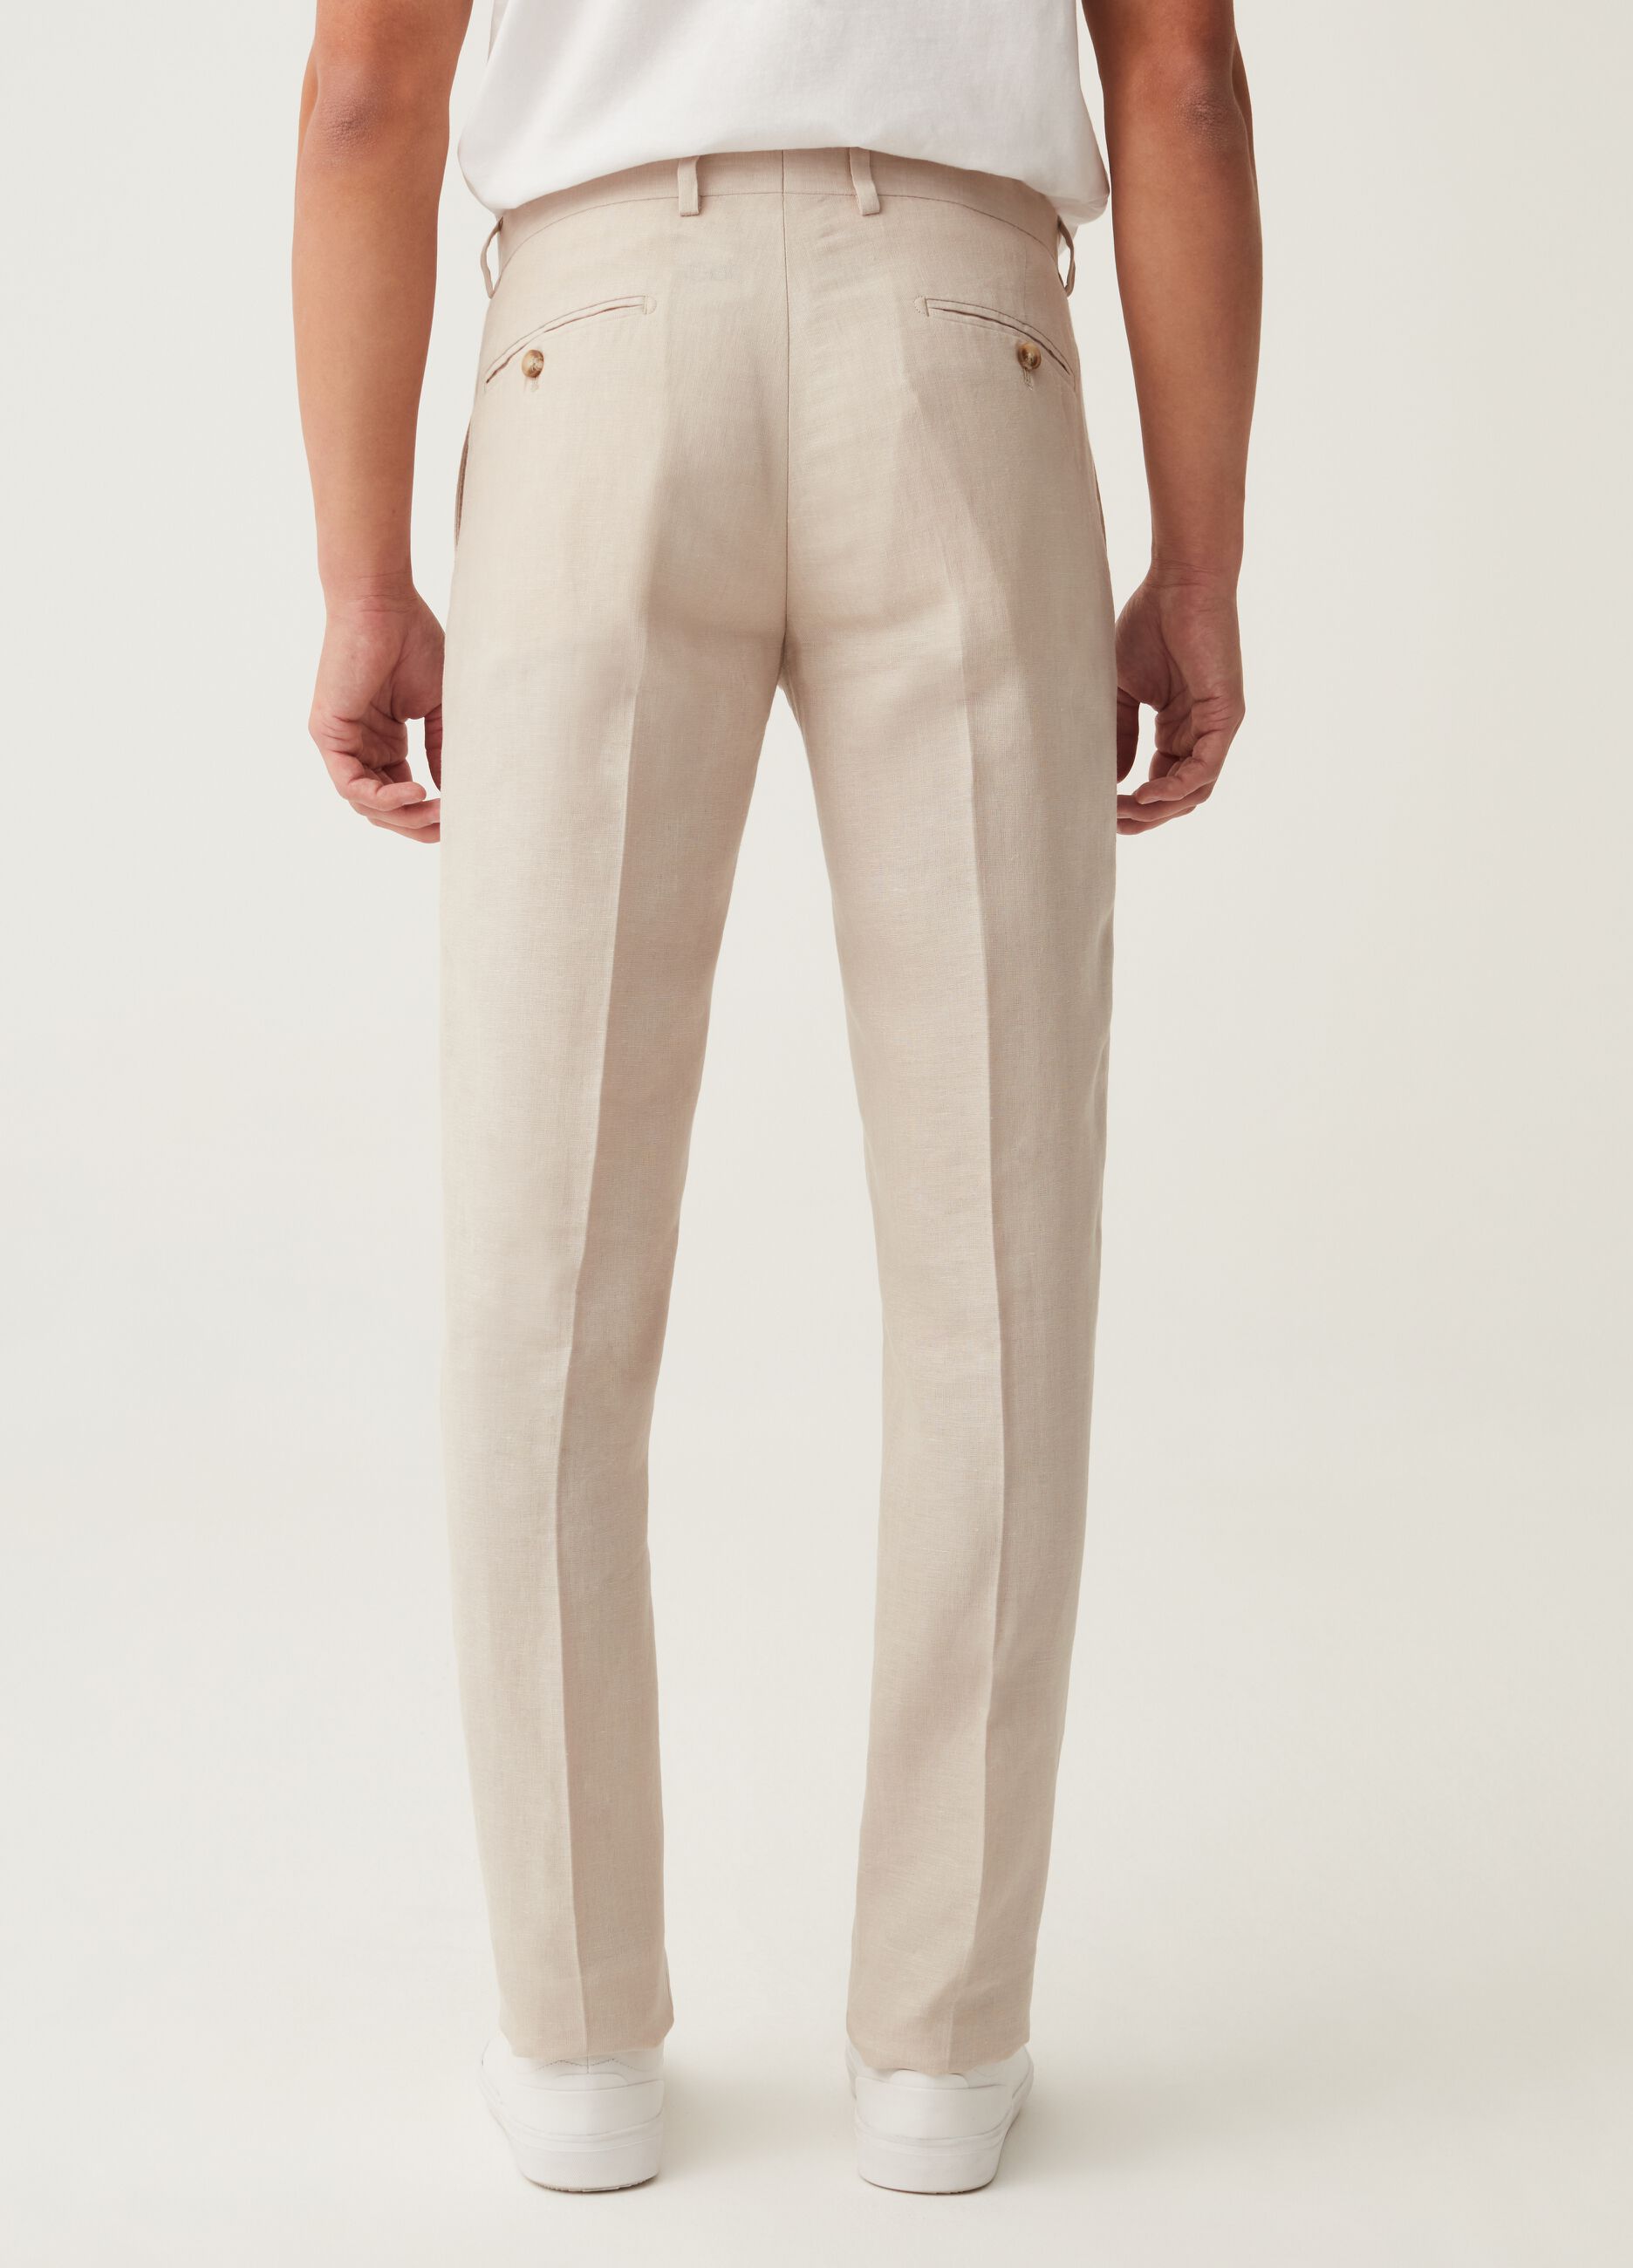 Pantalón slim fit de lino beige claro